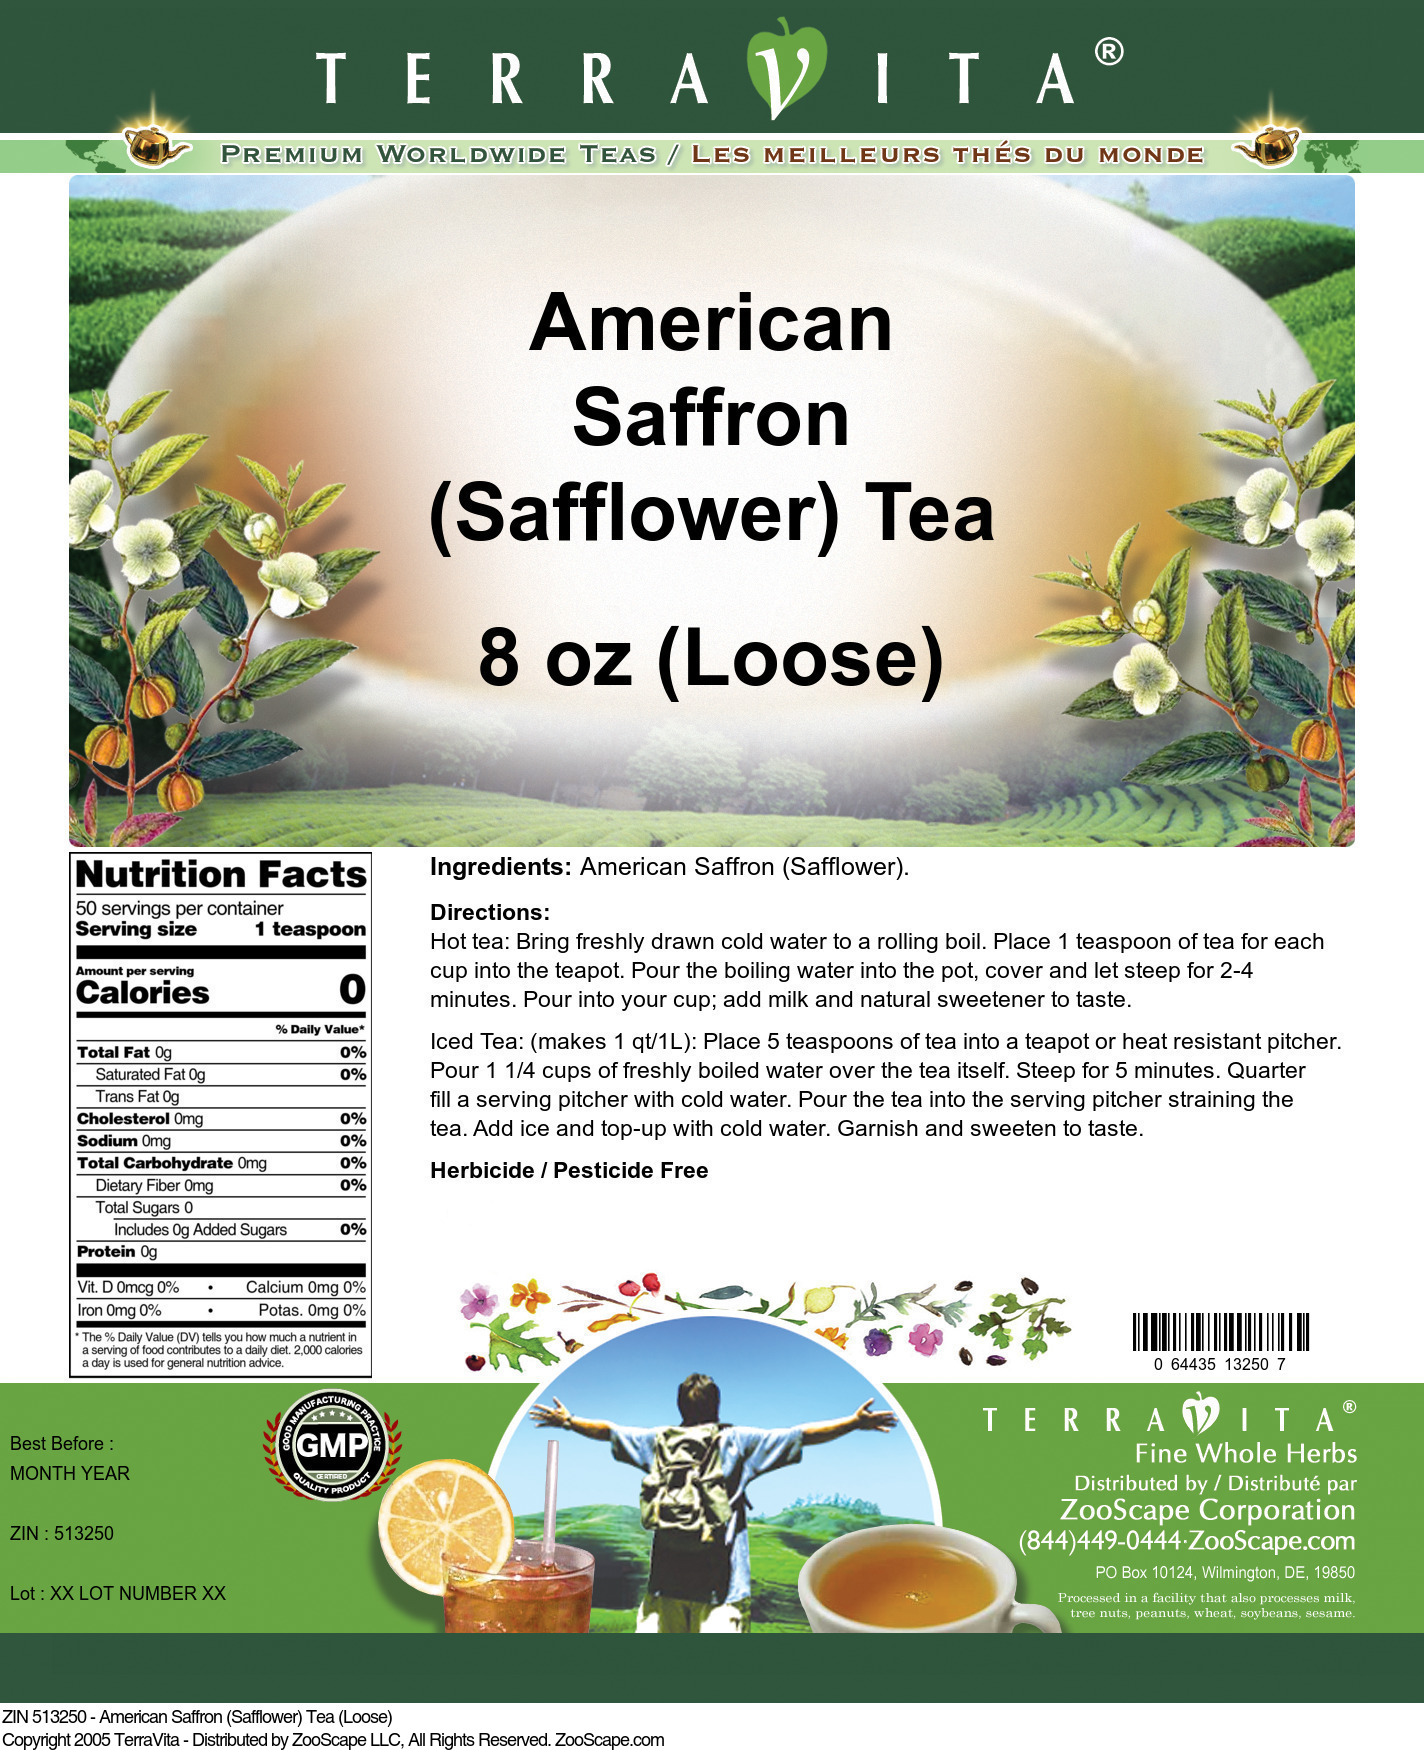 American Saffron (Safflower) Tea (Loose) - Label